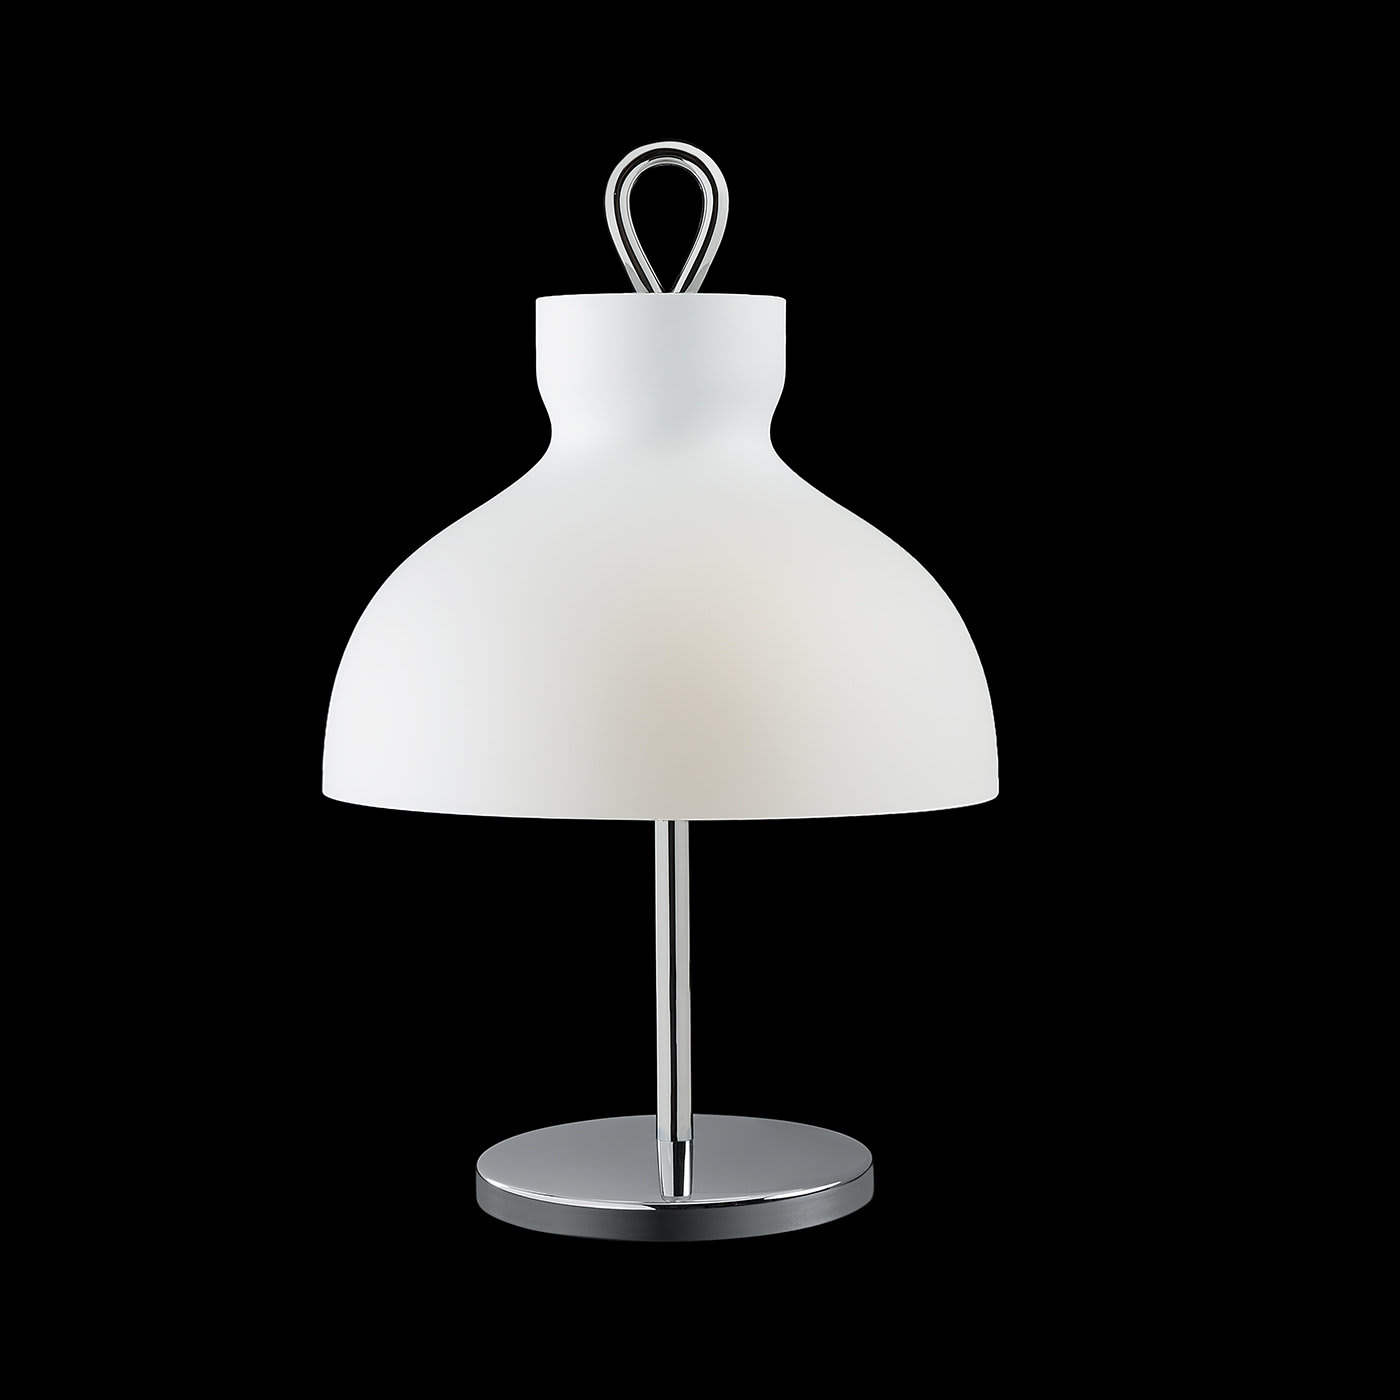 Arenzano Bassa Chrome Table Lamp by Ignazio Gardella - Tato